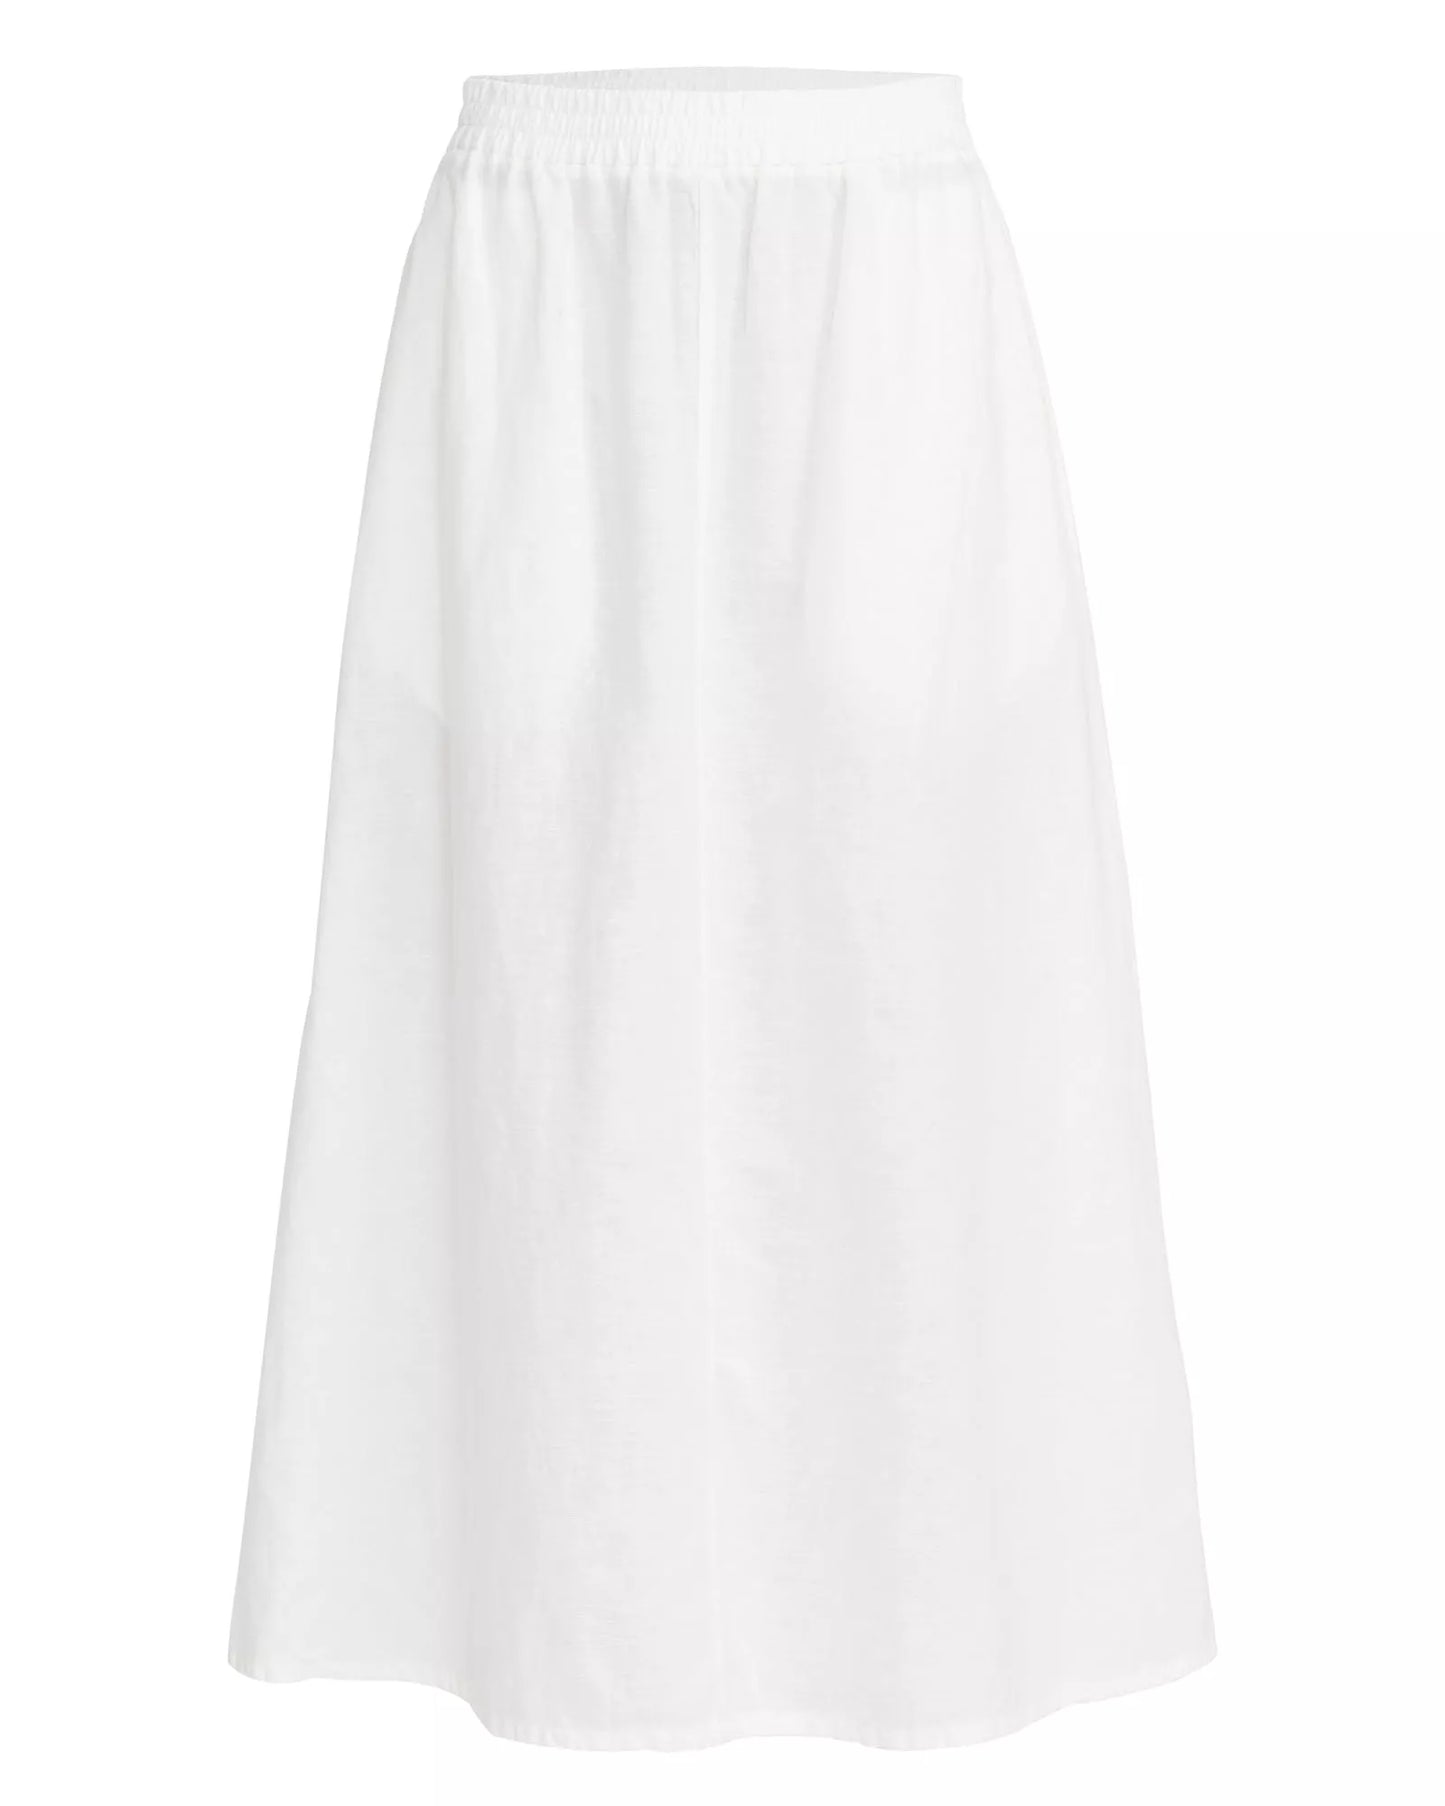 Holebrook Marina Skirt - White